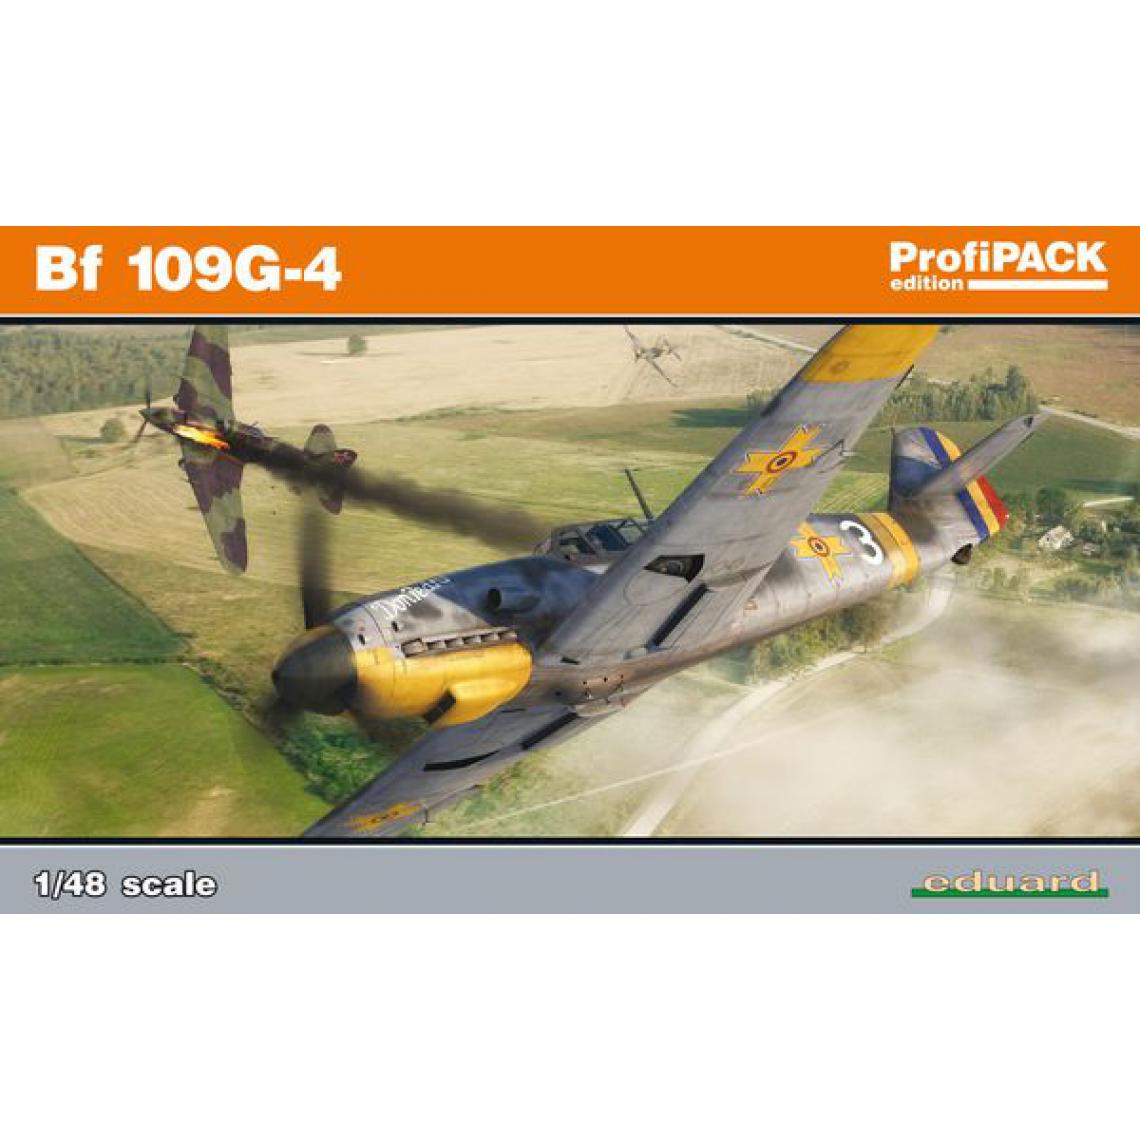 Eduard - Bf 109G-4 Profipack - 1:48e - Eduard Plastic Kits - Accessoires et pièces